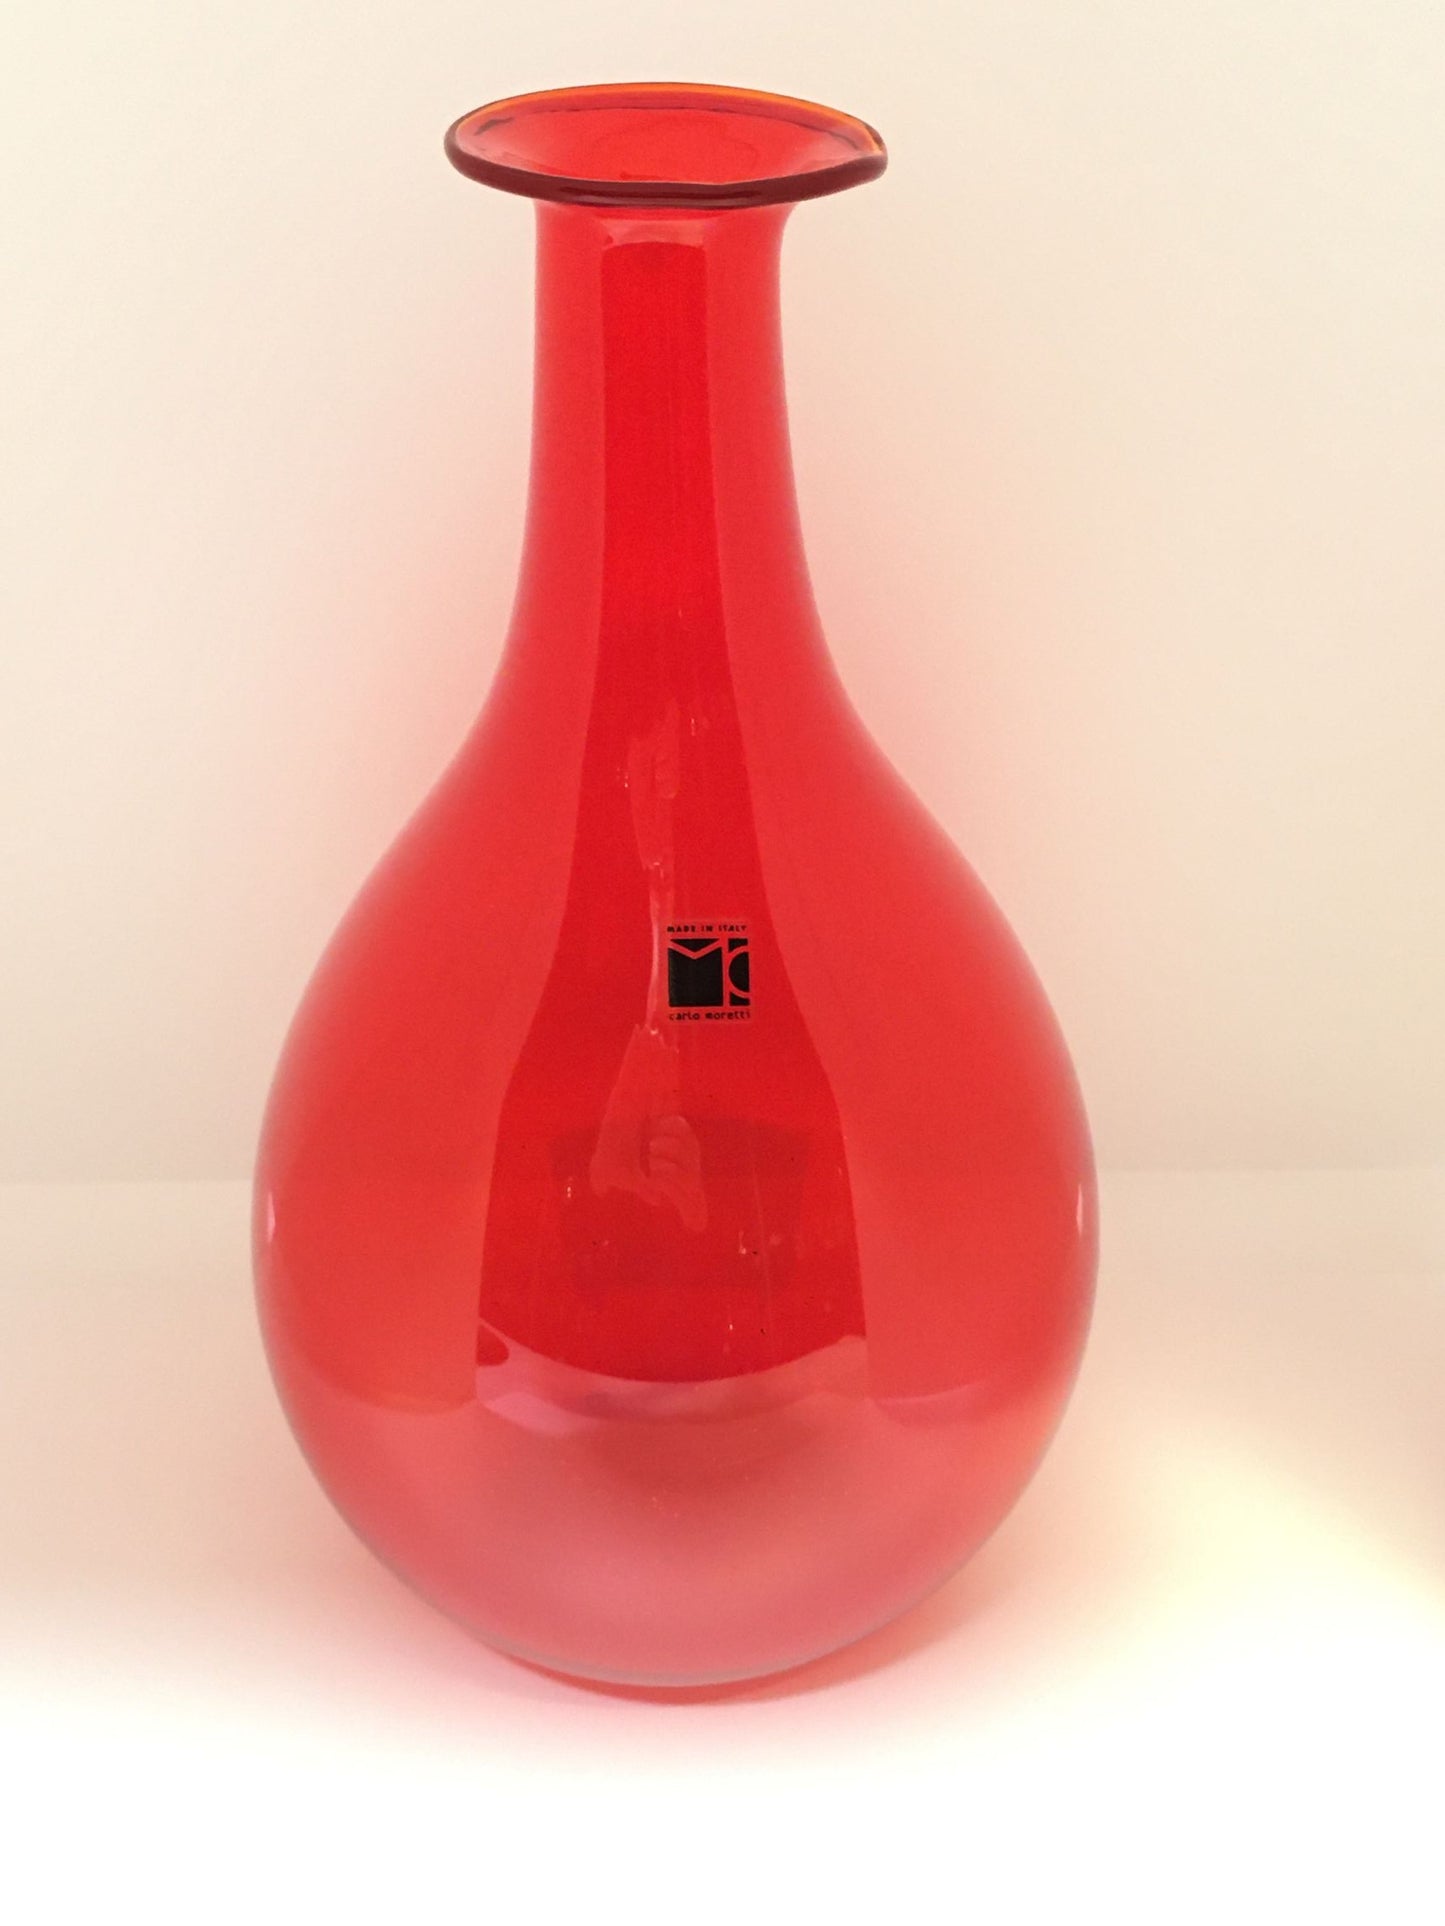 Vaso in vetro di Murano soffiato di colore rosso traslucido. EDIZIONE LIMITATA Dimensioni: altezza mm 290, diametro mm 180